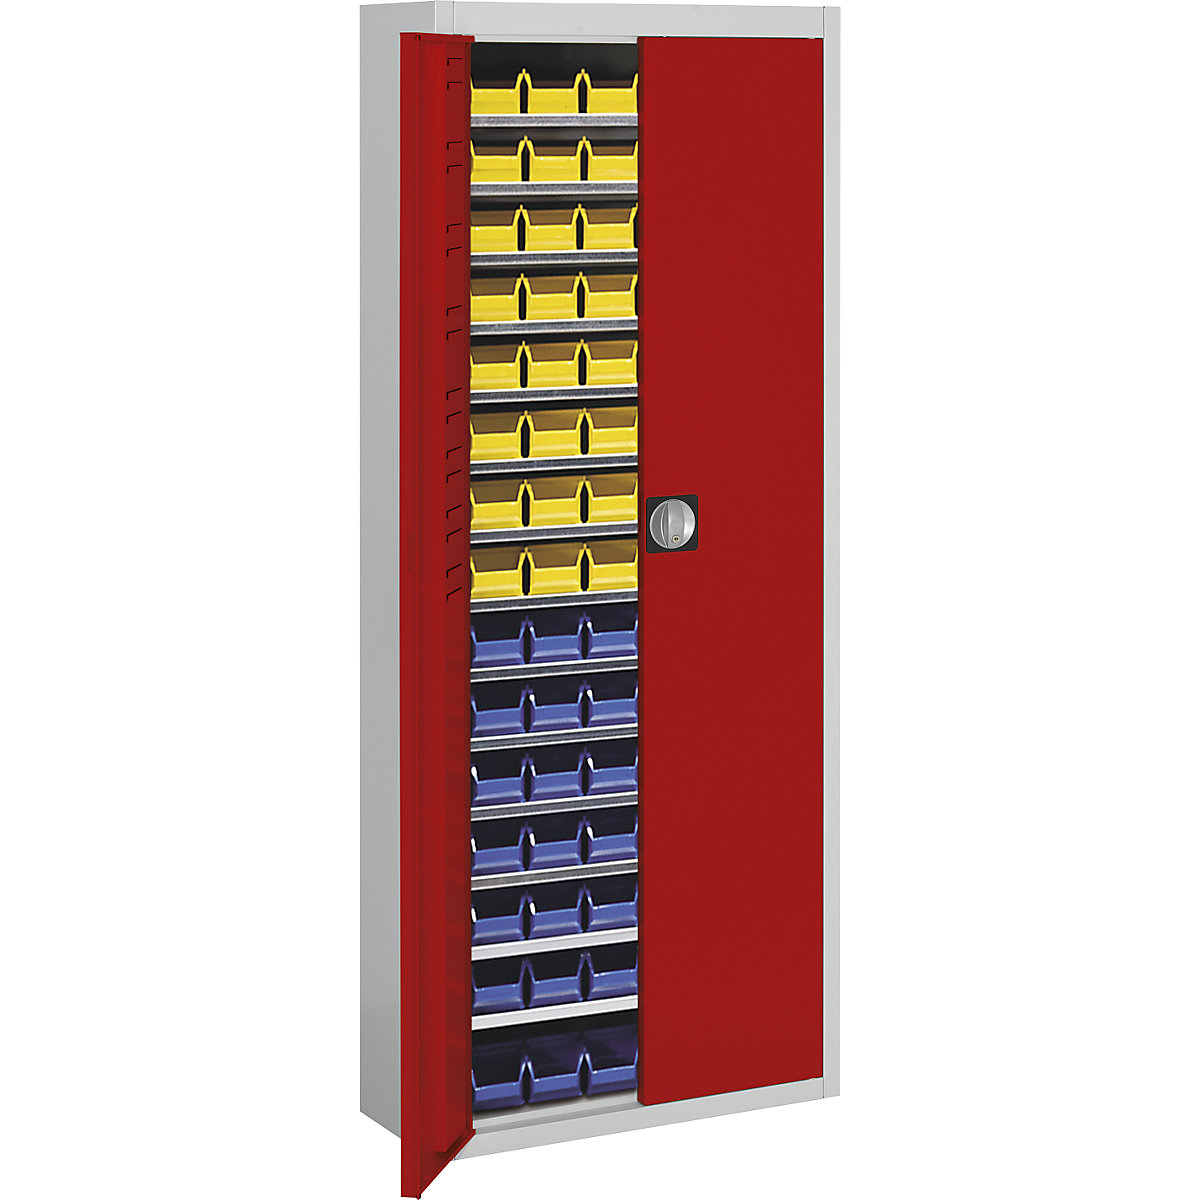 Magazijnkast met magazijnbakken – mauser, h x b x d = 1740 x 680 x 280 mm, tweekleurig, kastframe grijs, deuren rood, 90 bakken-7